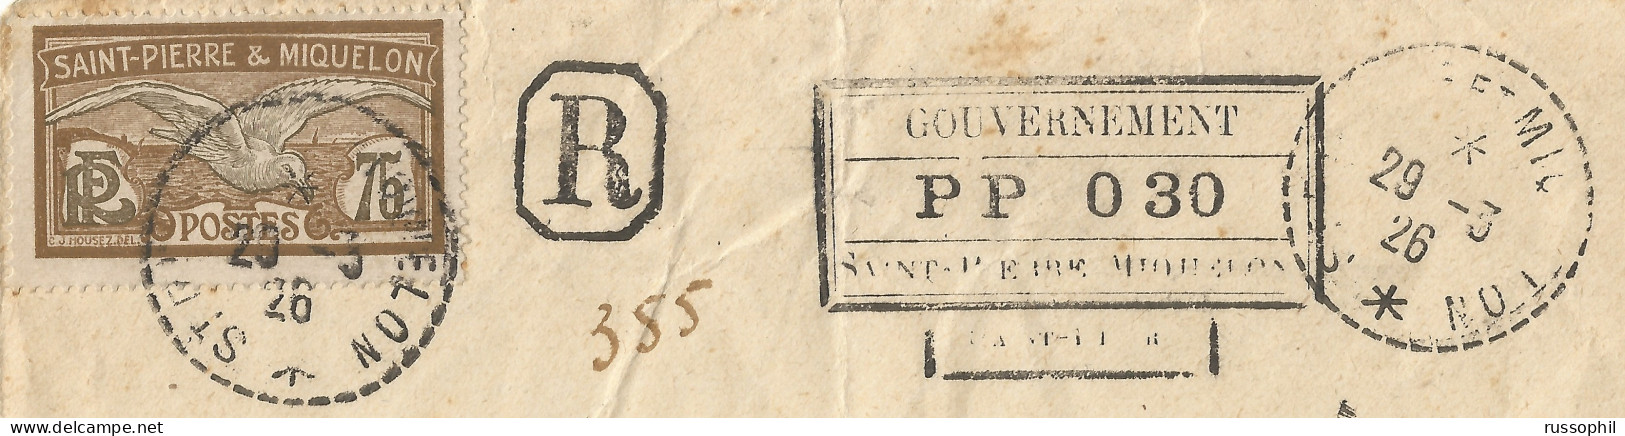 SAINT PIERRE ET MIQUELON - 30 CENT "PORT PAYE - POST PAID - PP" REGISTERED COVER TO FRANCE - 1926  - Storia Postale